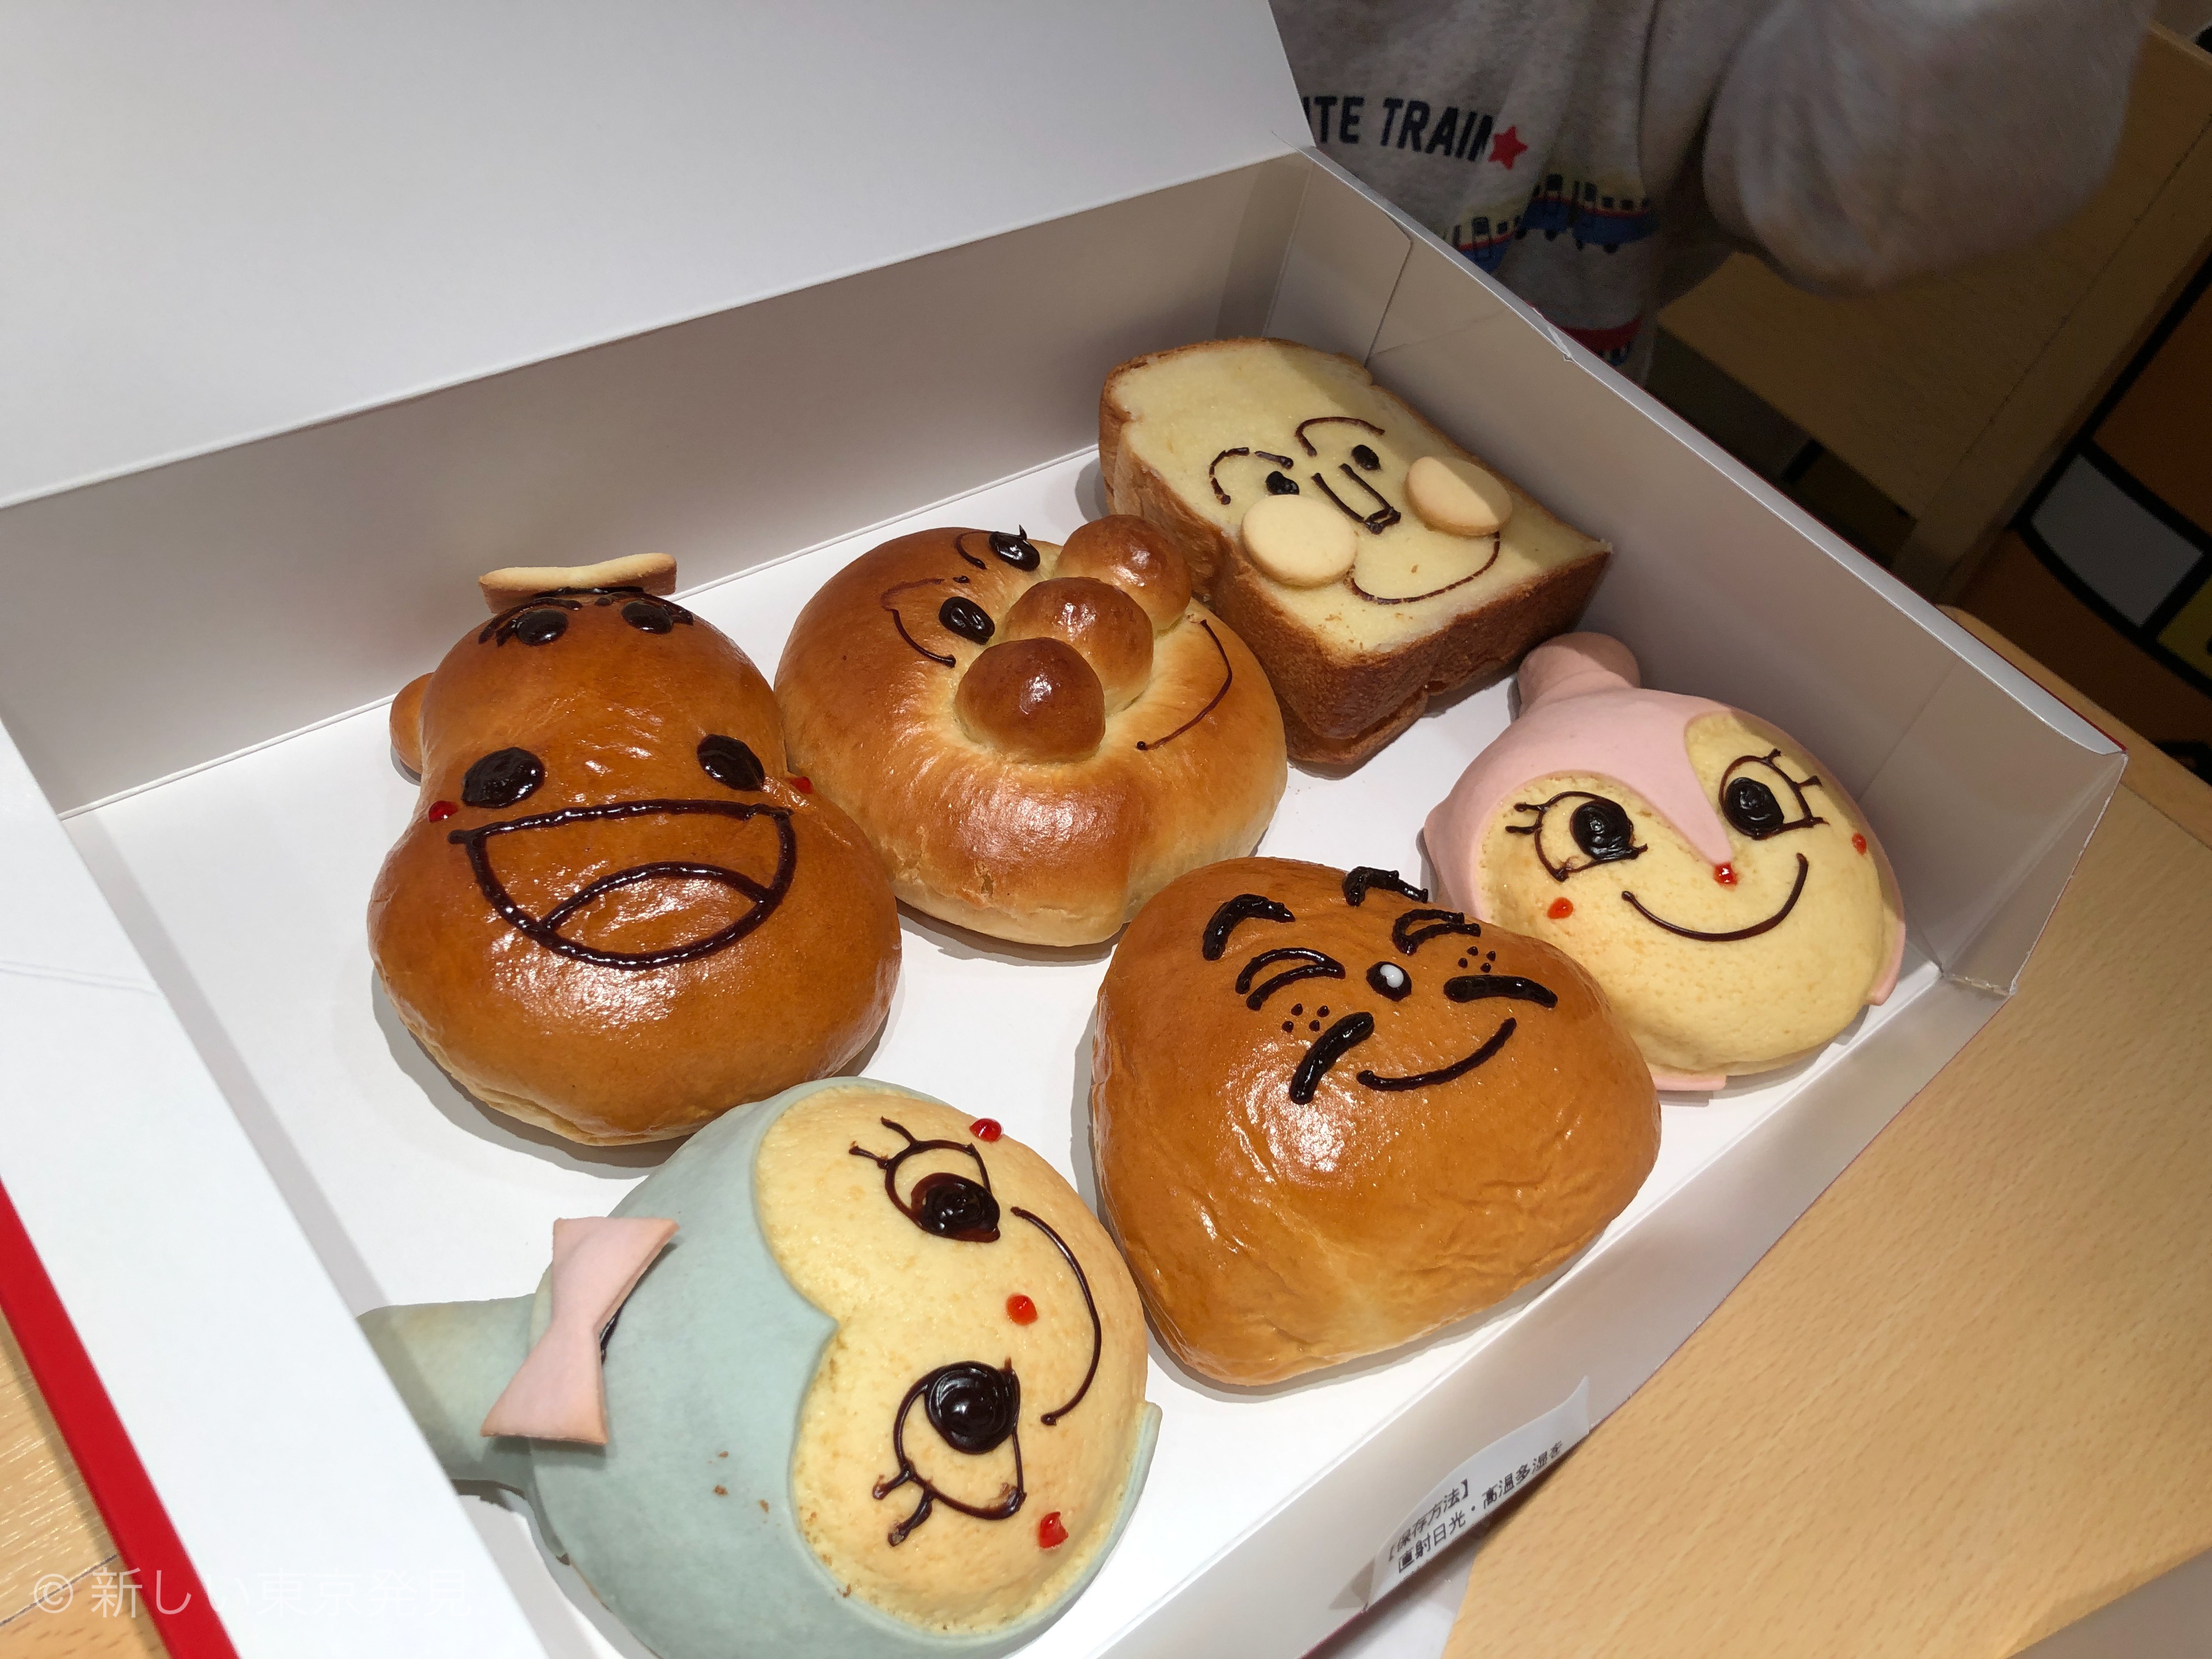 横浜アンパンマンこどもミュージアムの ジャムおじさんのパン工房 は 大人も美味しく3歳子供も喜ぶパン がたくさん 子連れパパママを応援する情報チャンネル 新しい東京発見